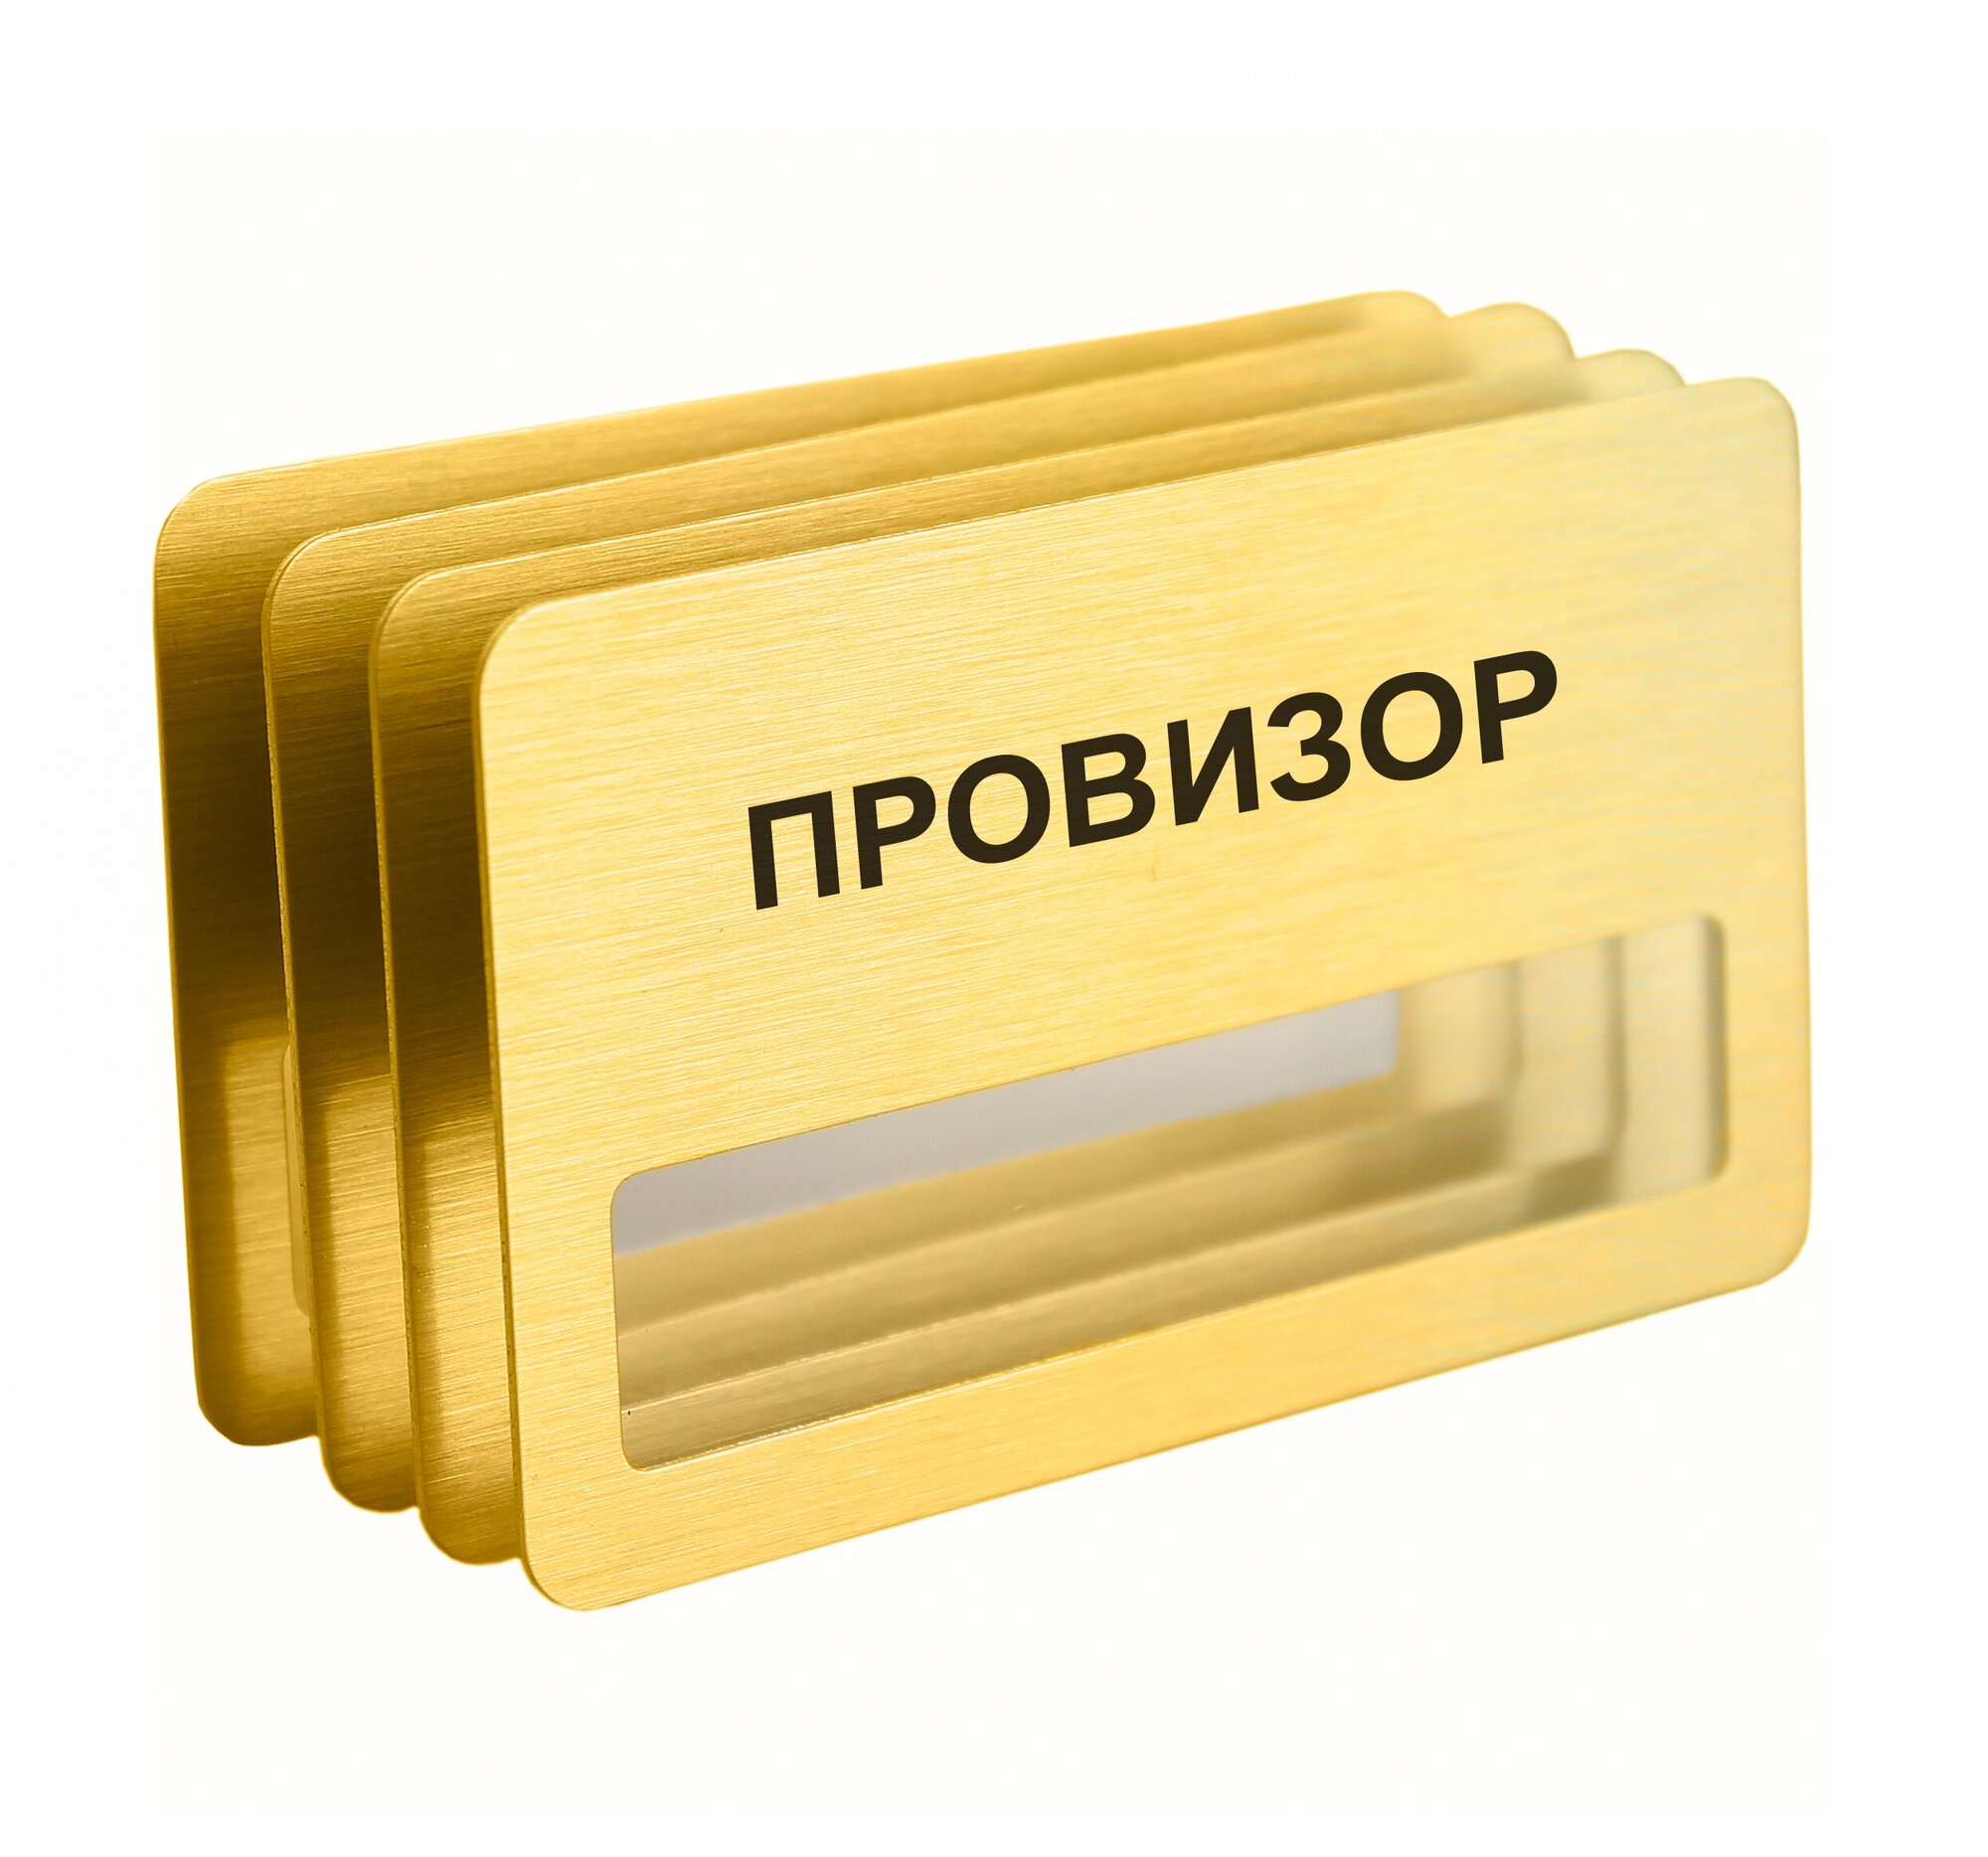 Бейдж "Провизор" магнитный 4 шт. золотого цвета.